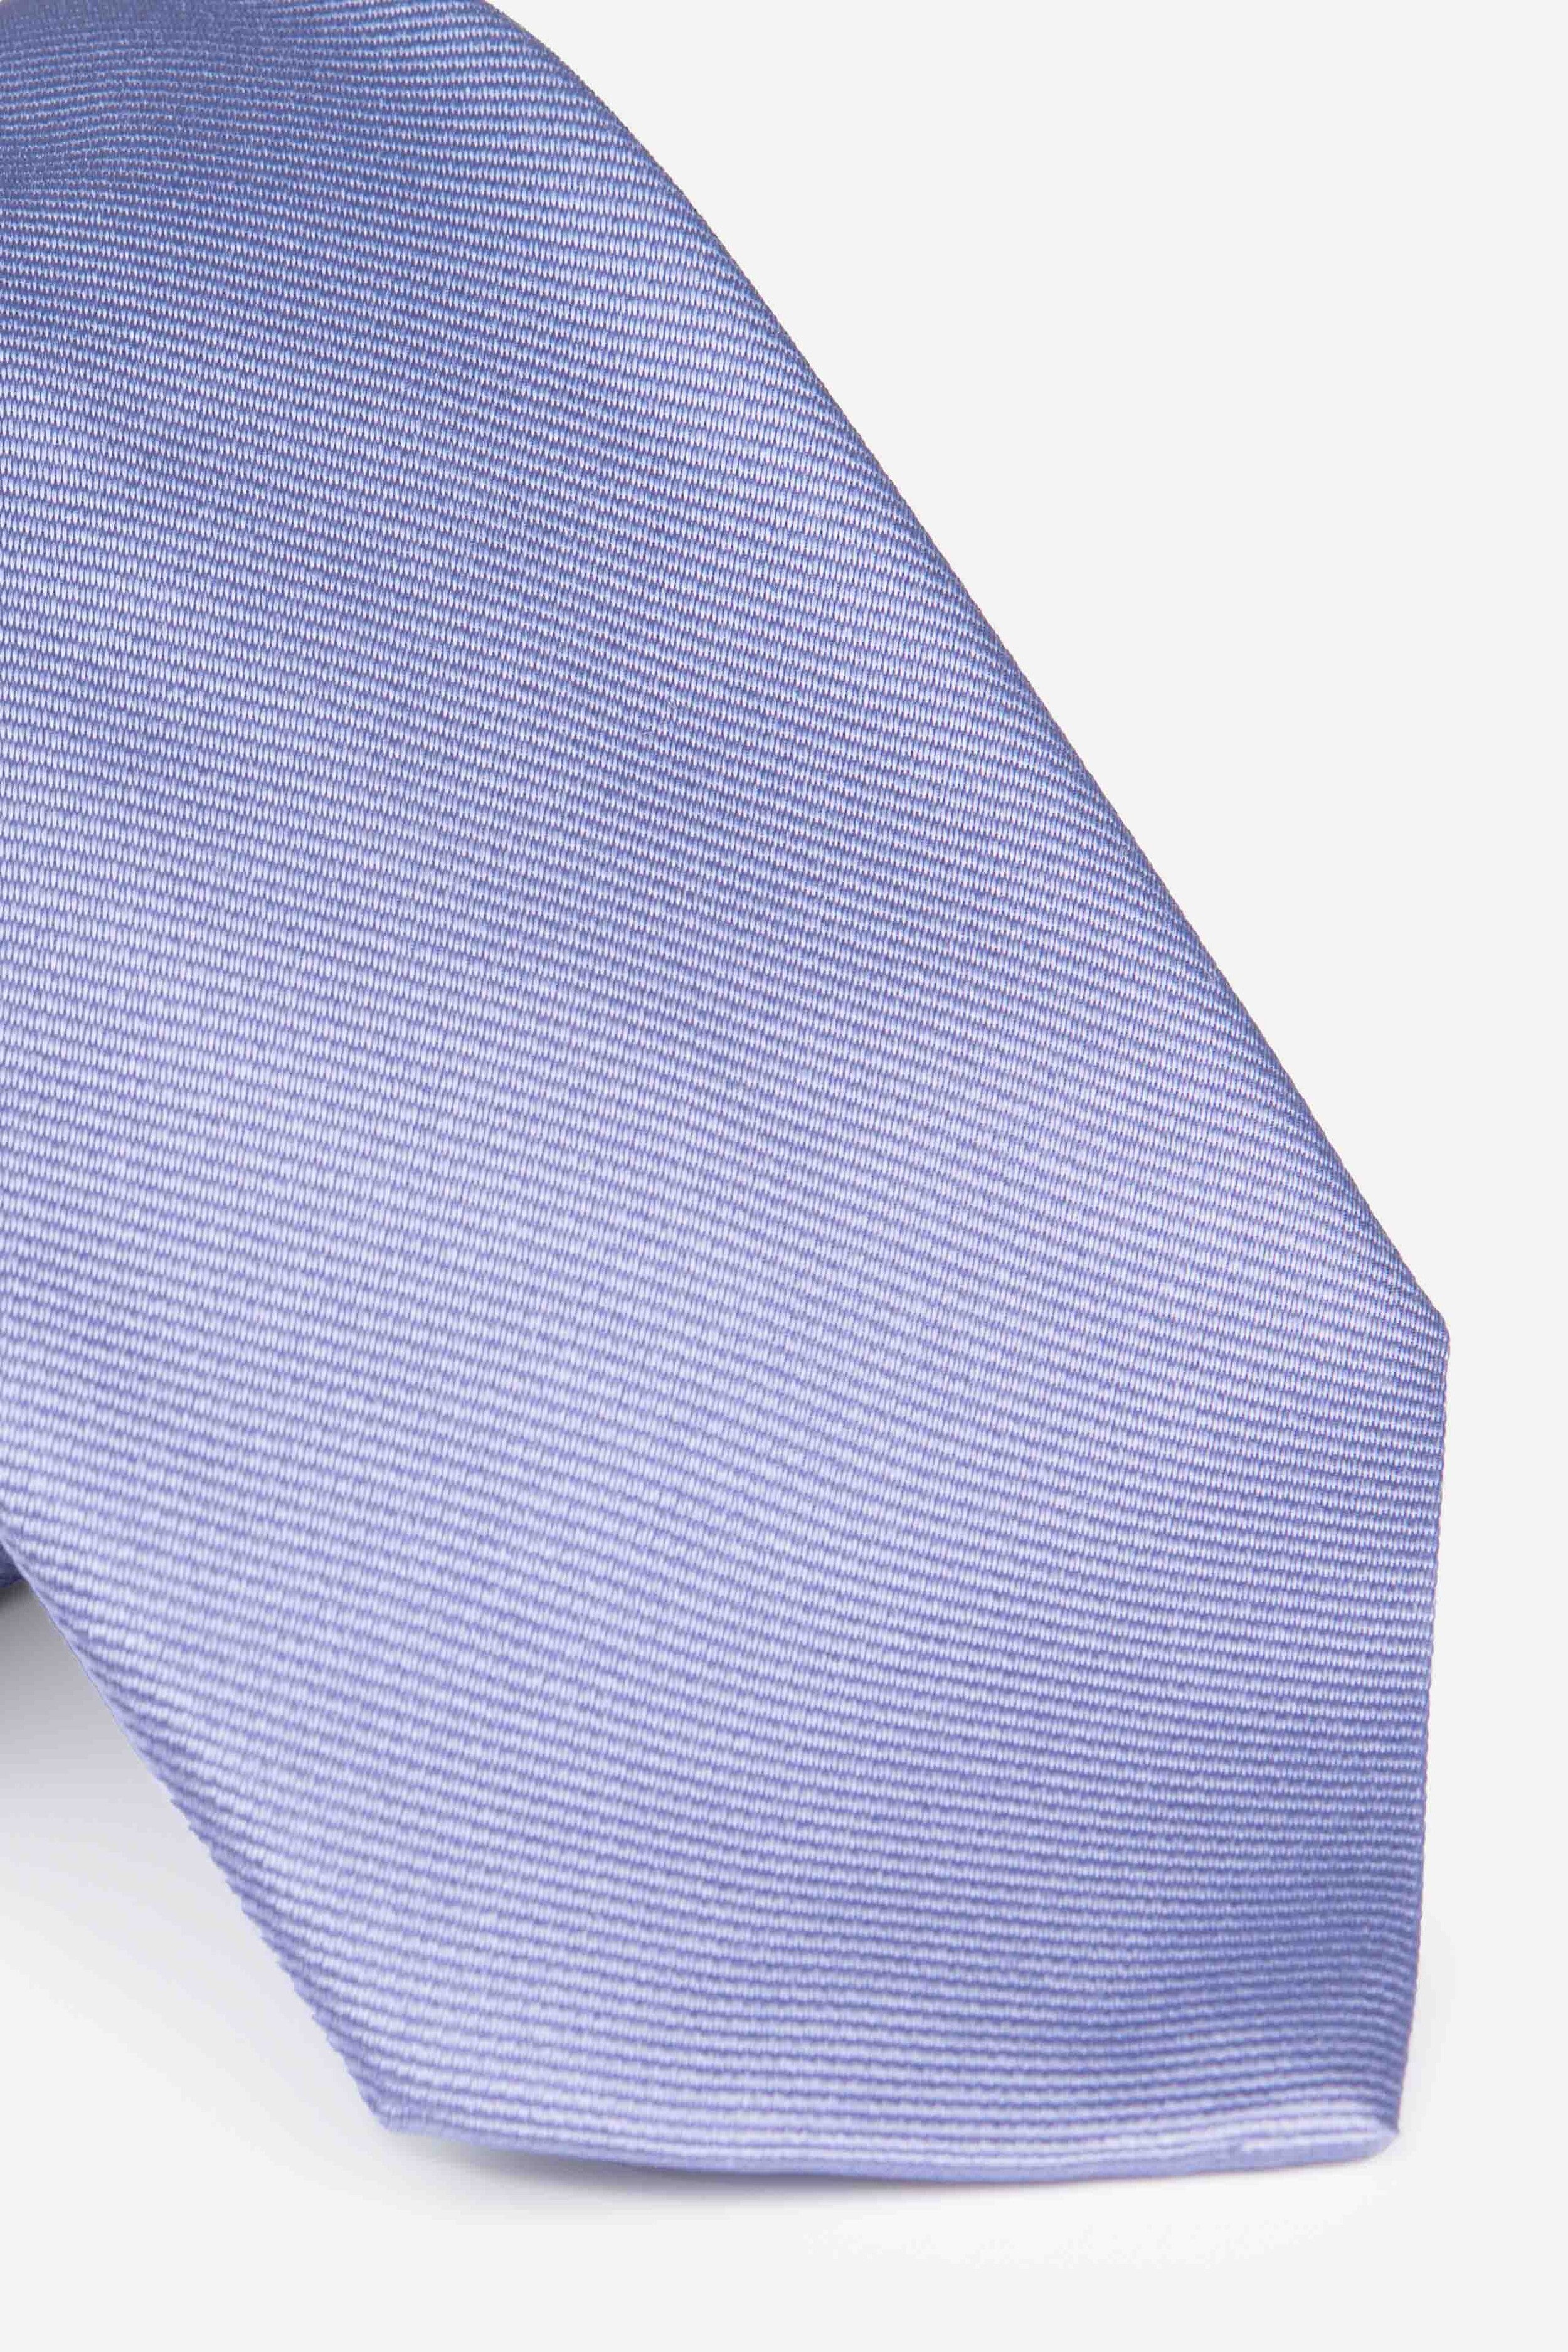 Cravatta in seta ottoman - GLICINE